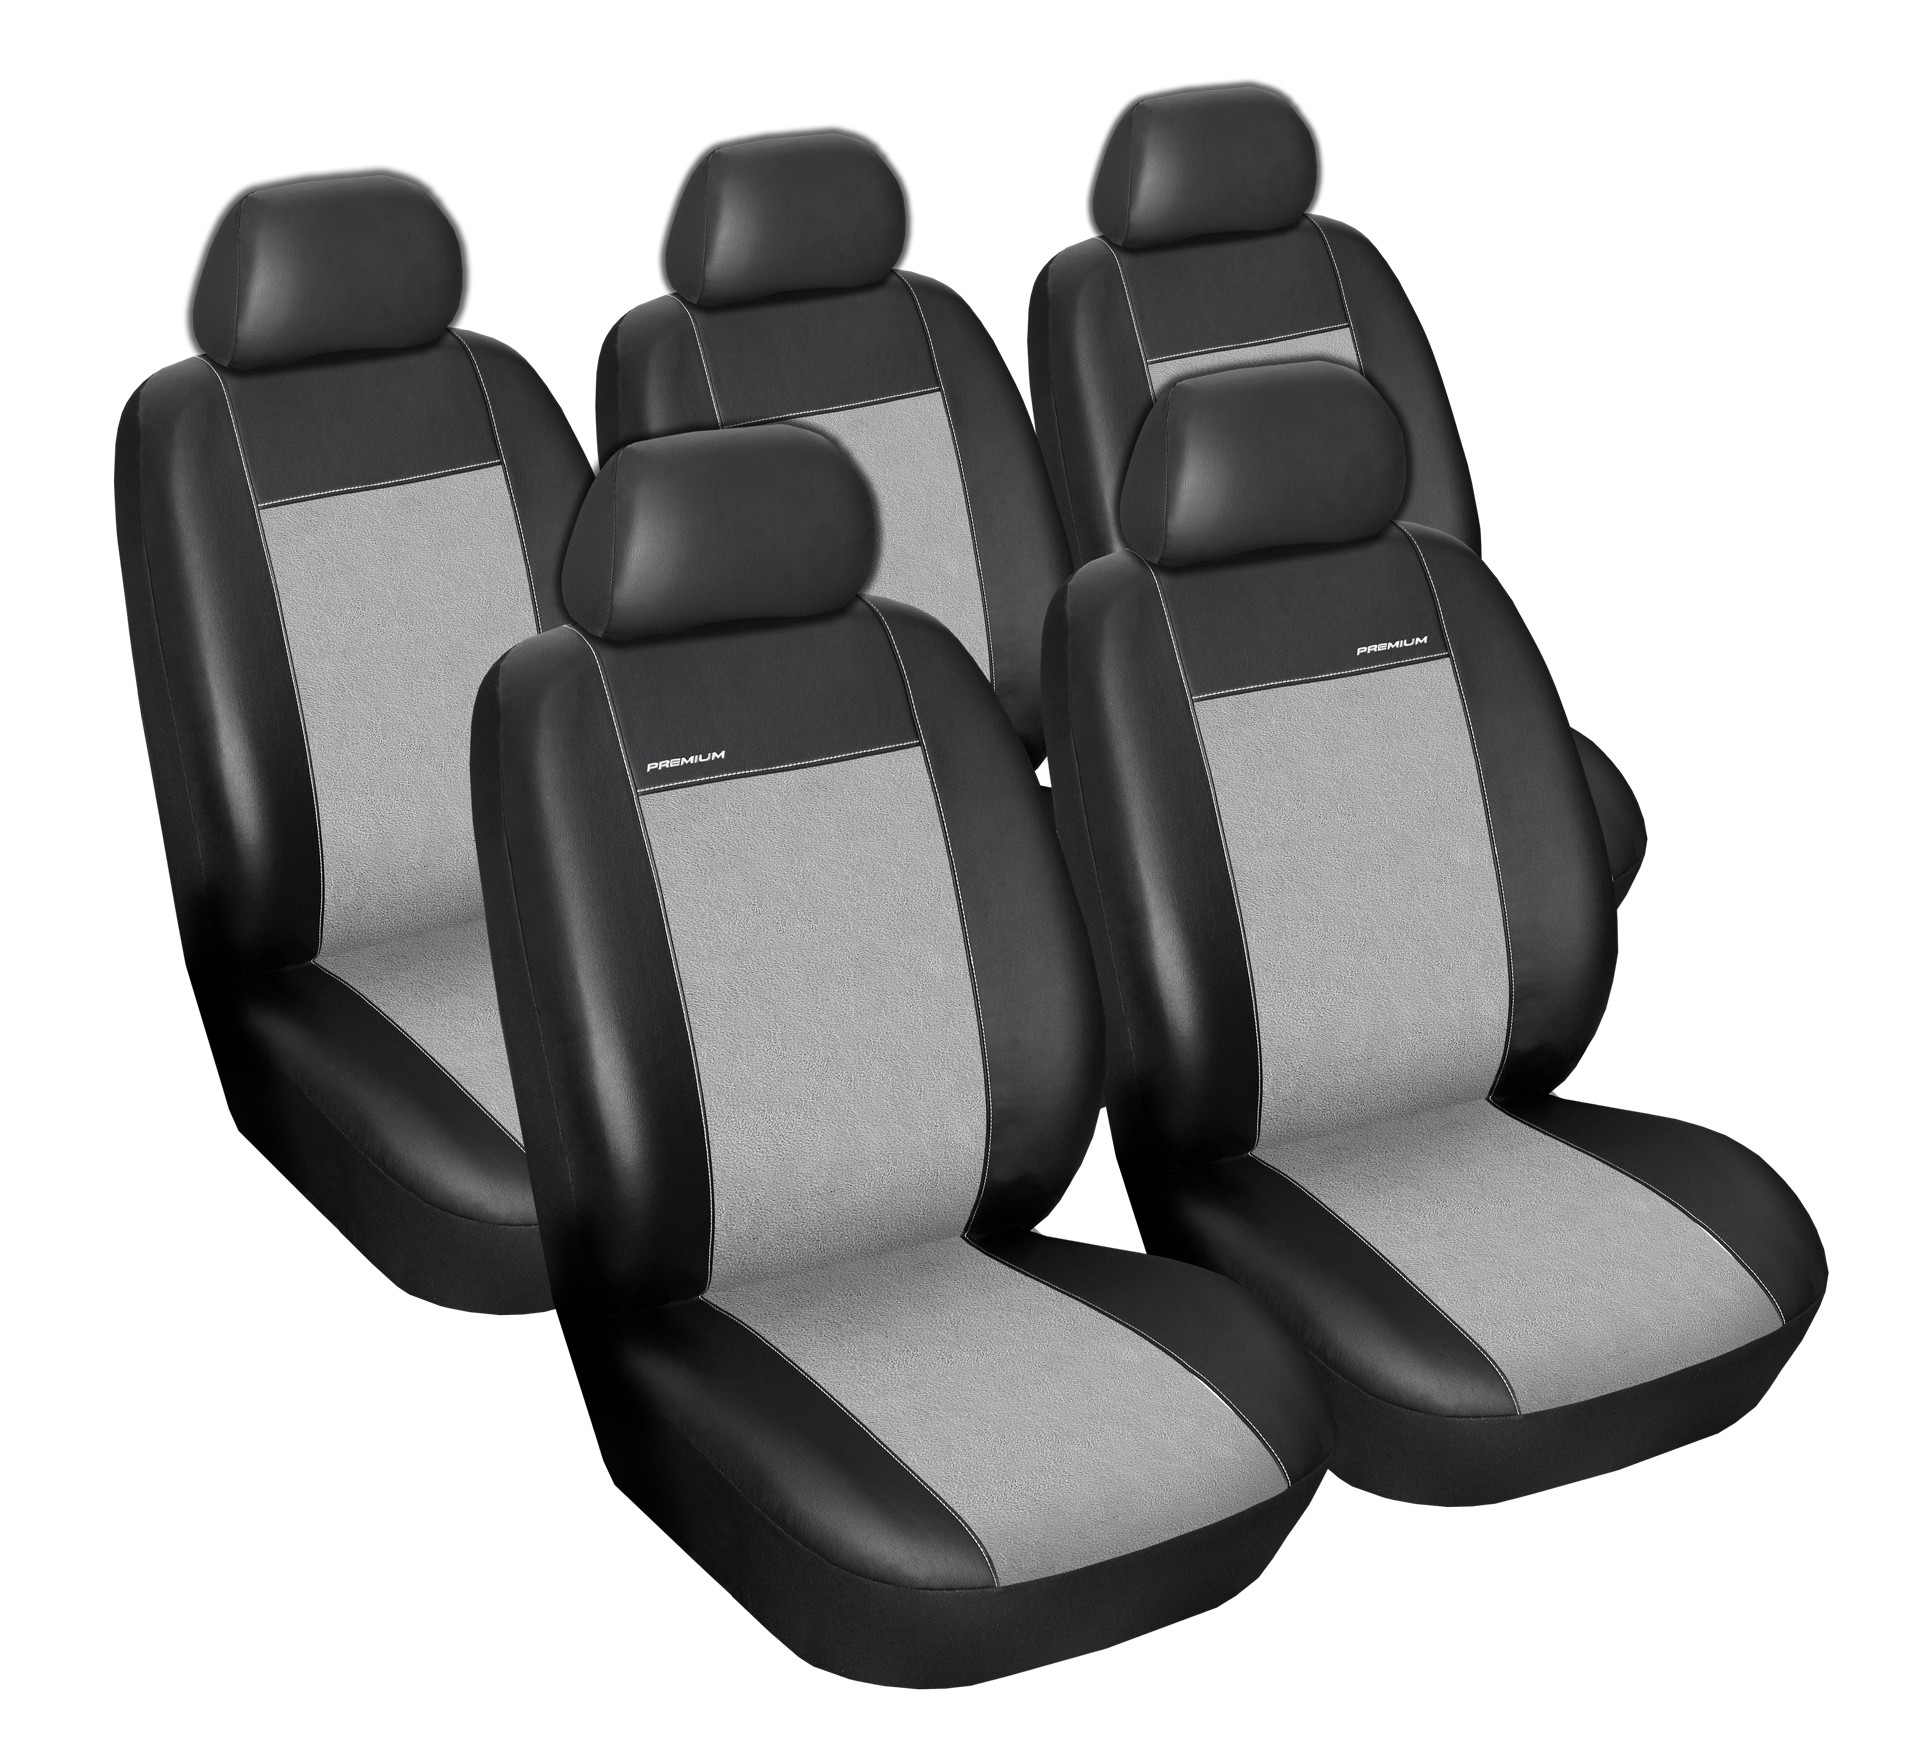 Autopotahy CITROEN BERLINGO II , 5 samostatných sedaček, Eco kůže + alcantara šedé